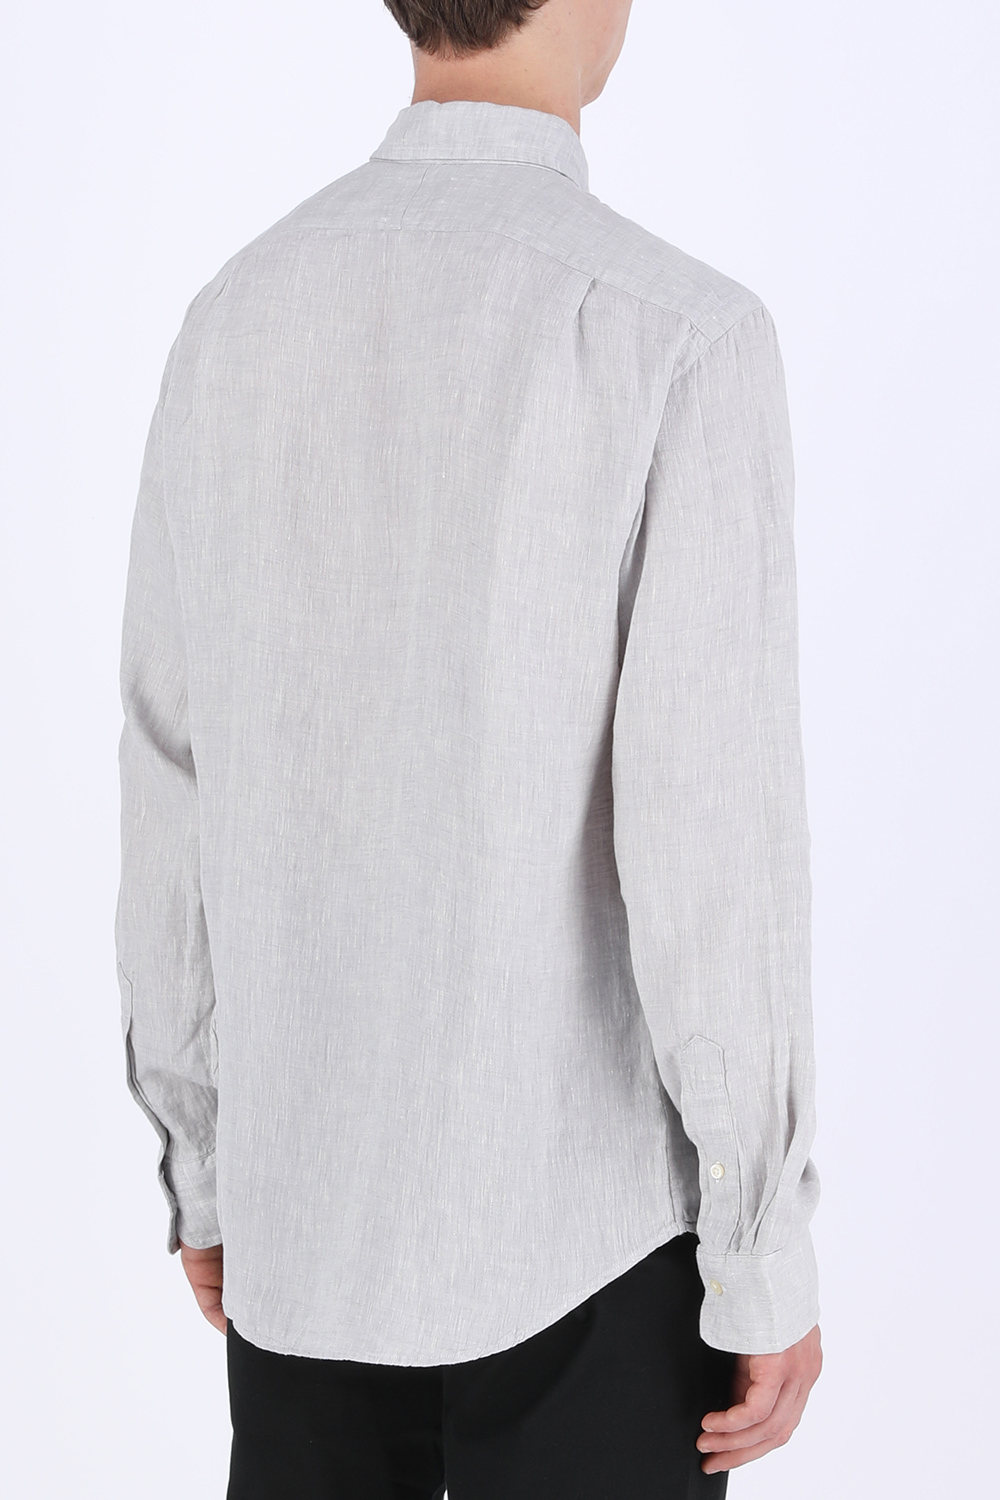 Classic Fit Linen Shirt in Soft Grey POLO RALPH LAUREN